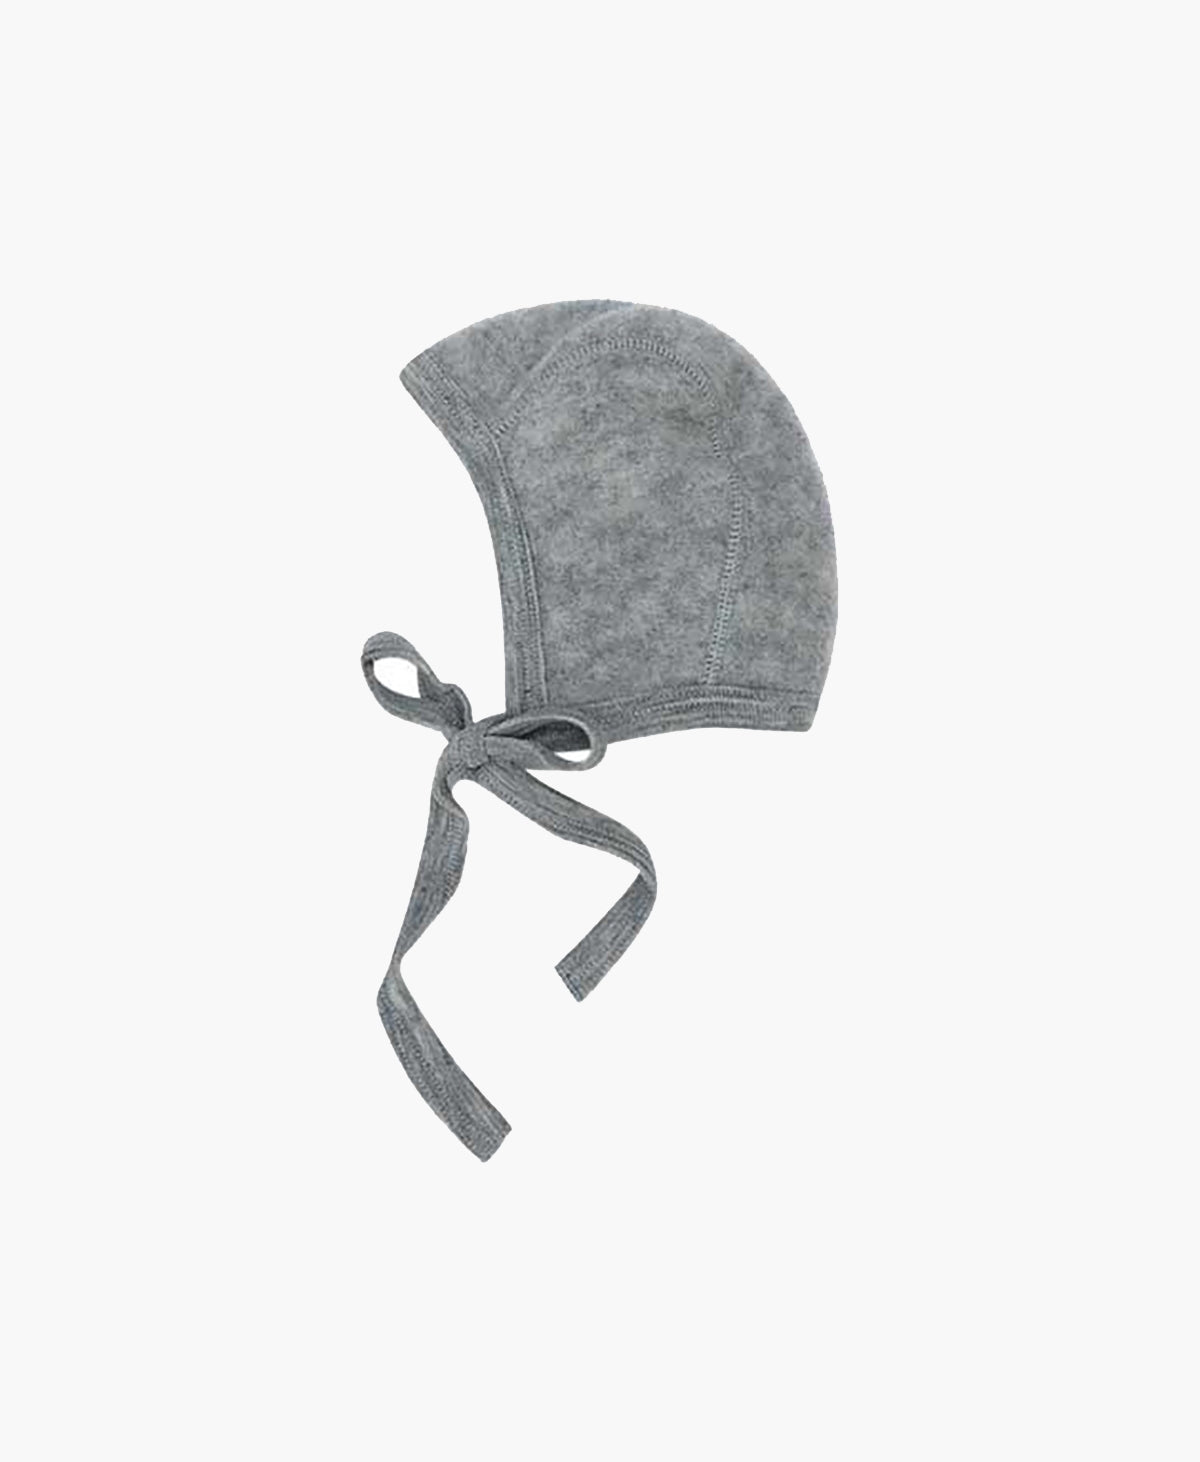 Engel - Wool/fleece helmet - Grey Melange